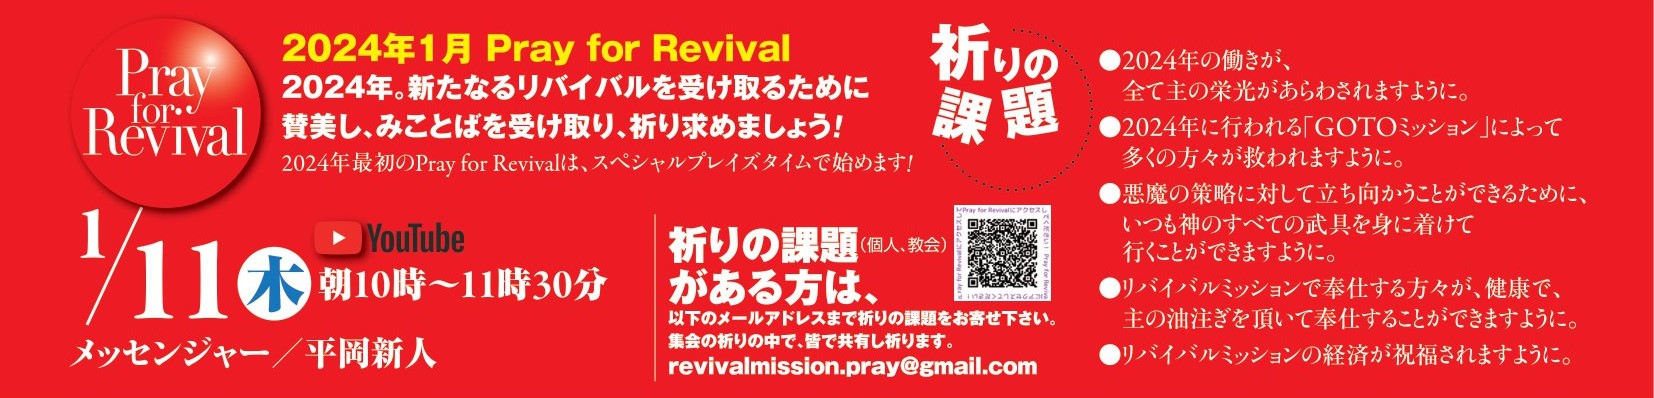 YouTube - Pray for Revival (2024年1月) @ リバイバルミッション (Youtube配信)